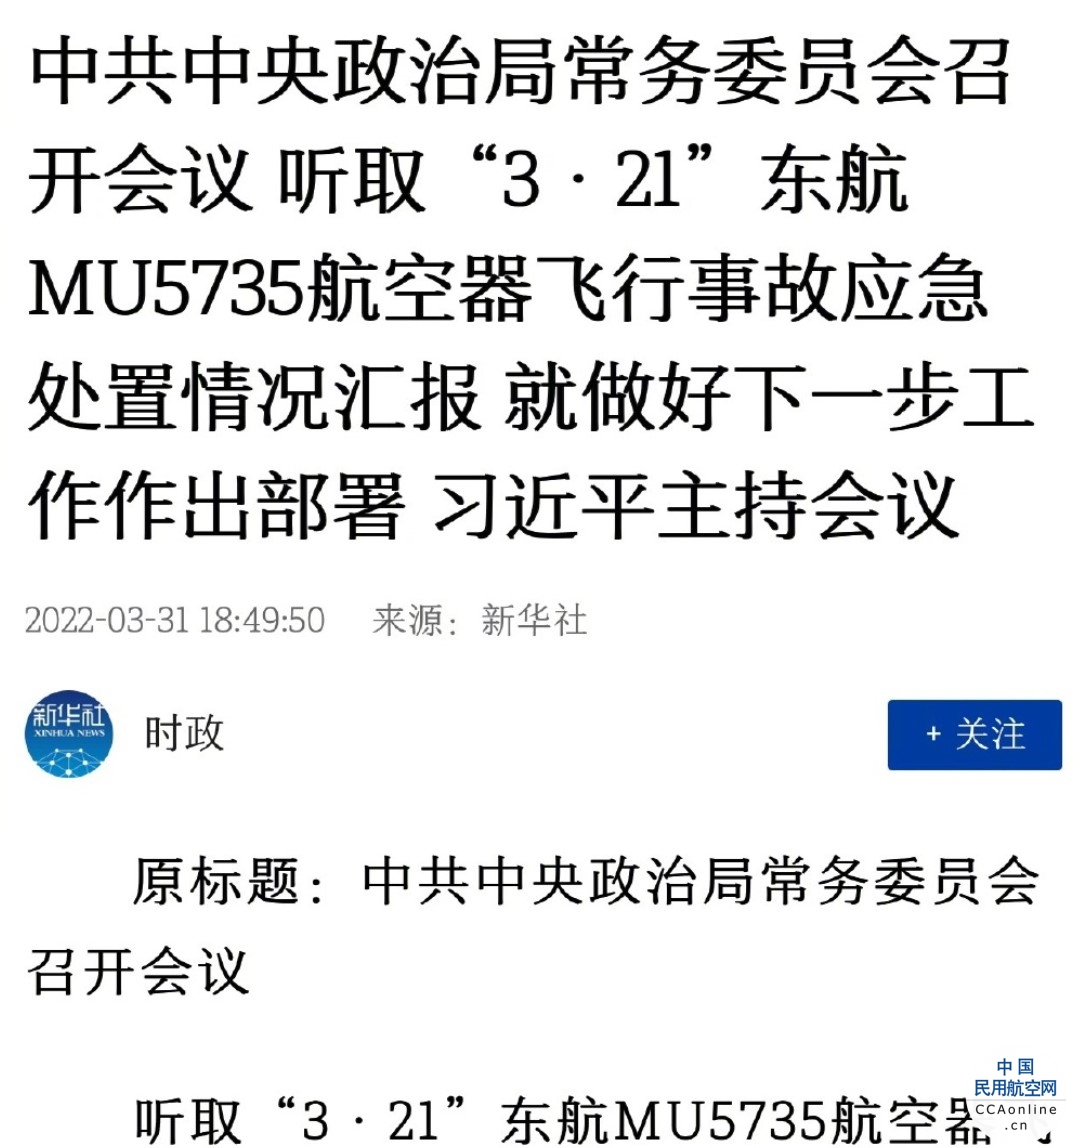 中共中央政治局常委会听取MU5735事故处置情况汇报